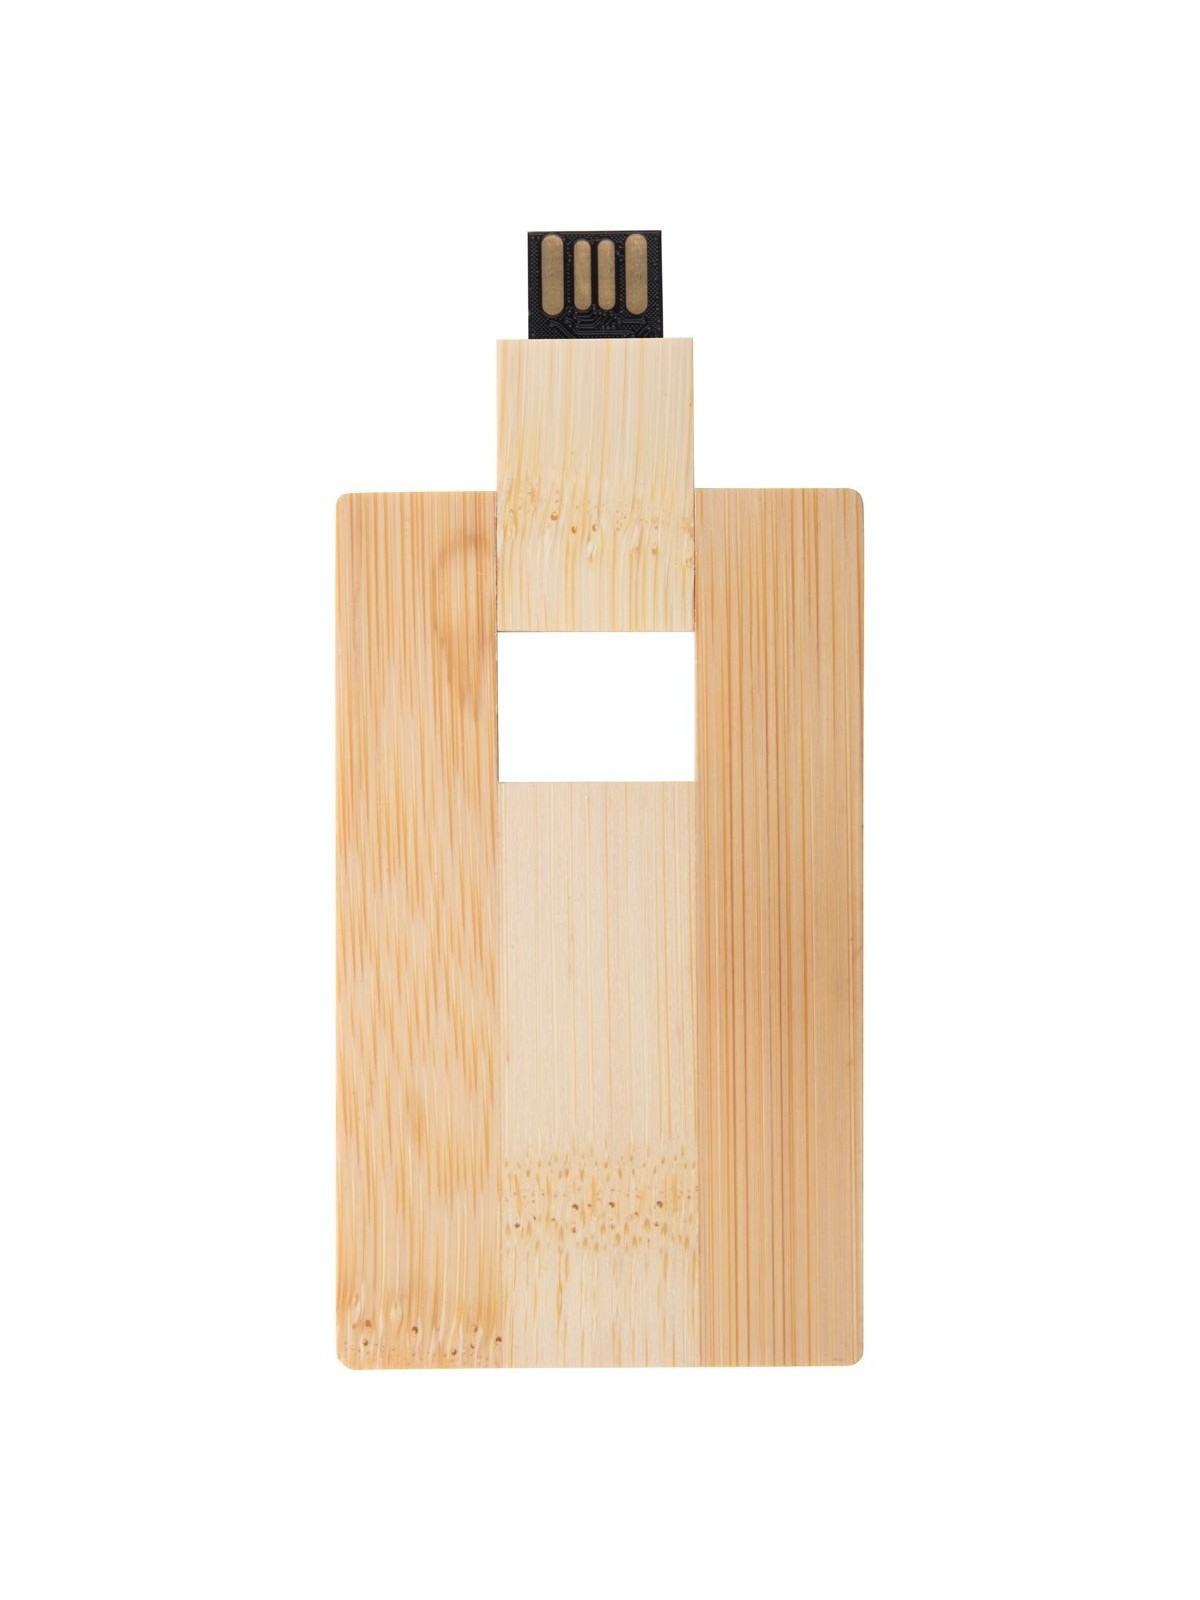 10-460 Clé USB carte de crédit en bois personnalisé